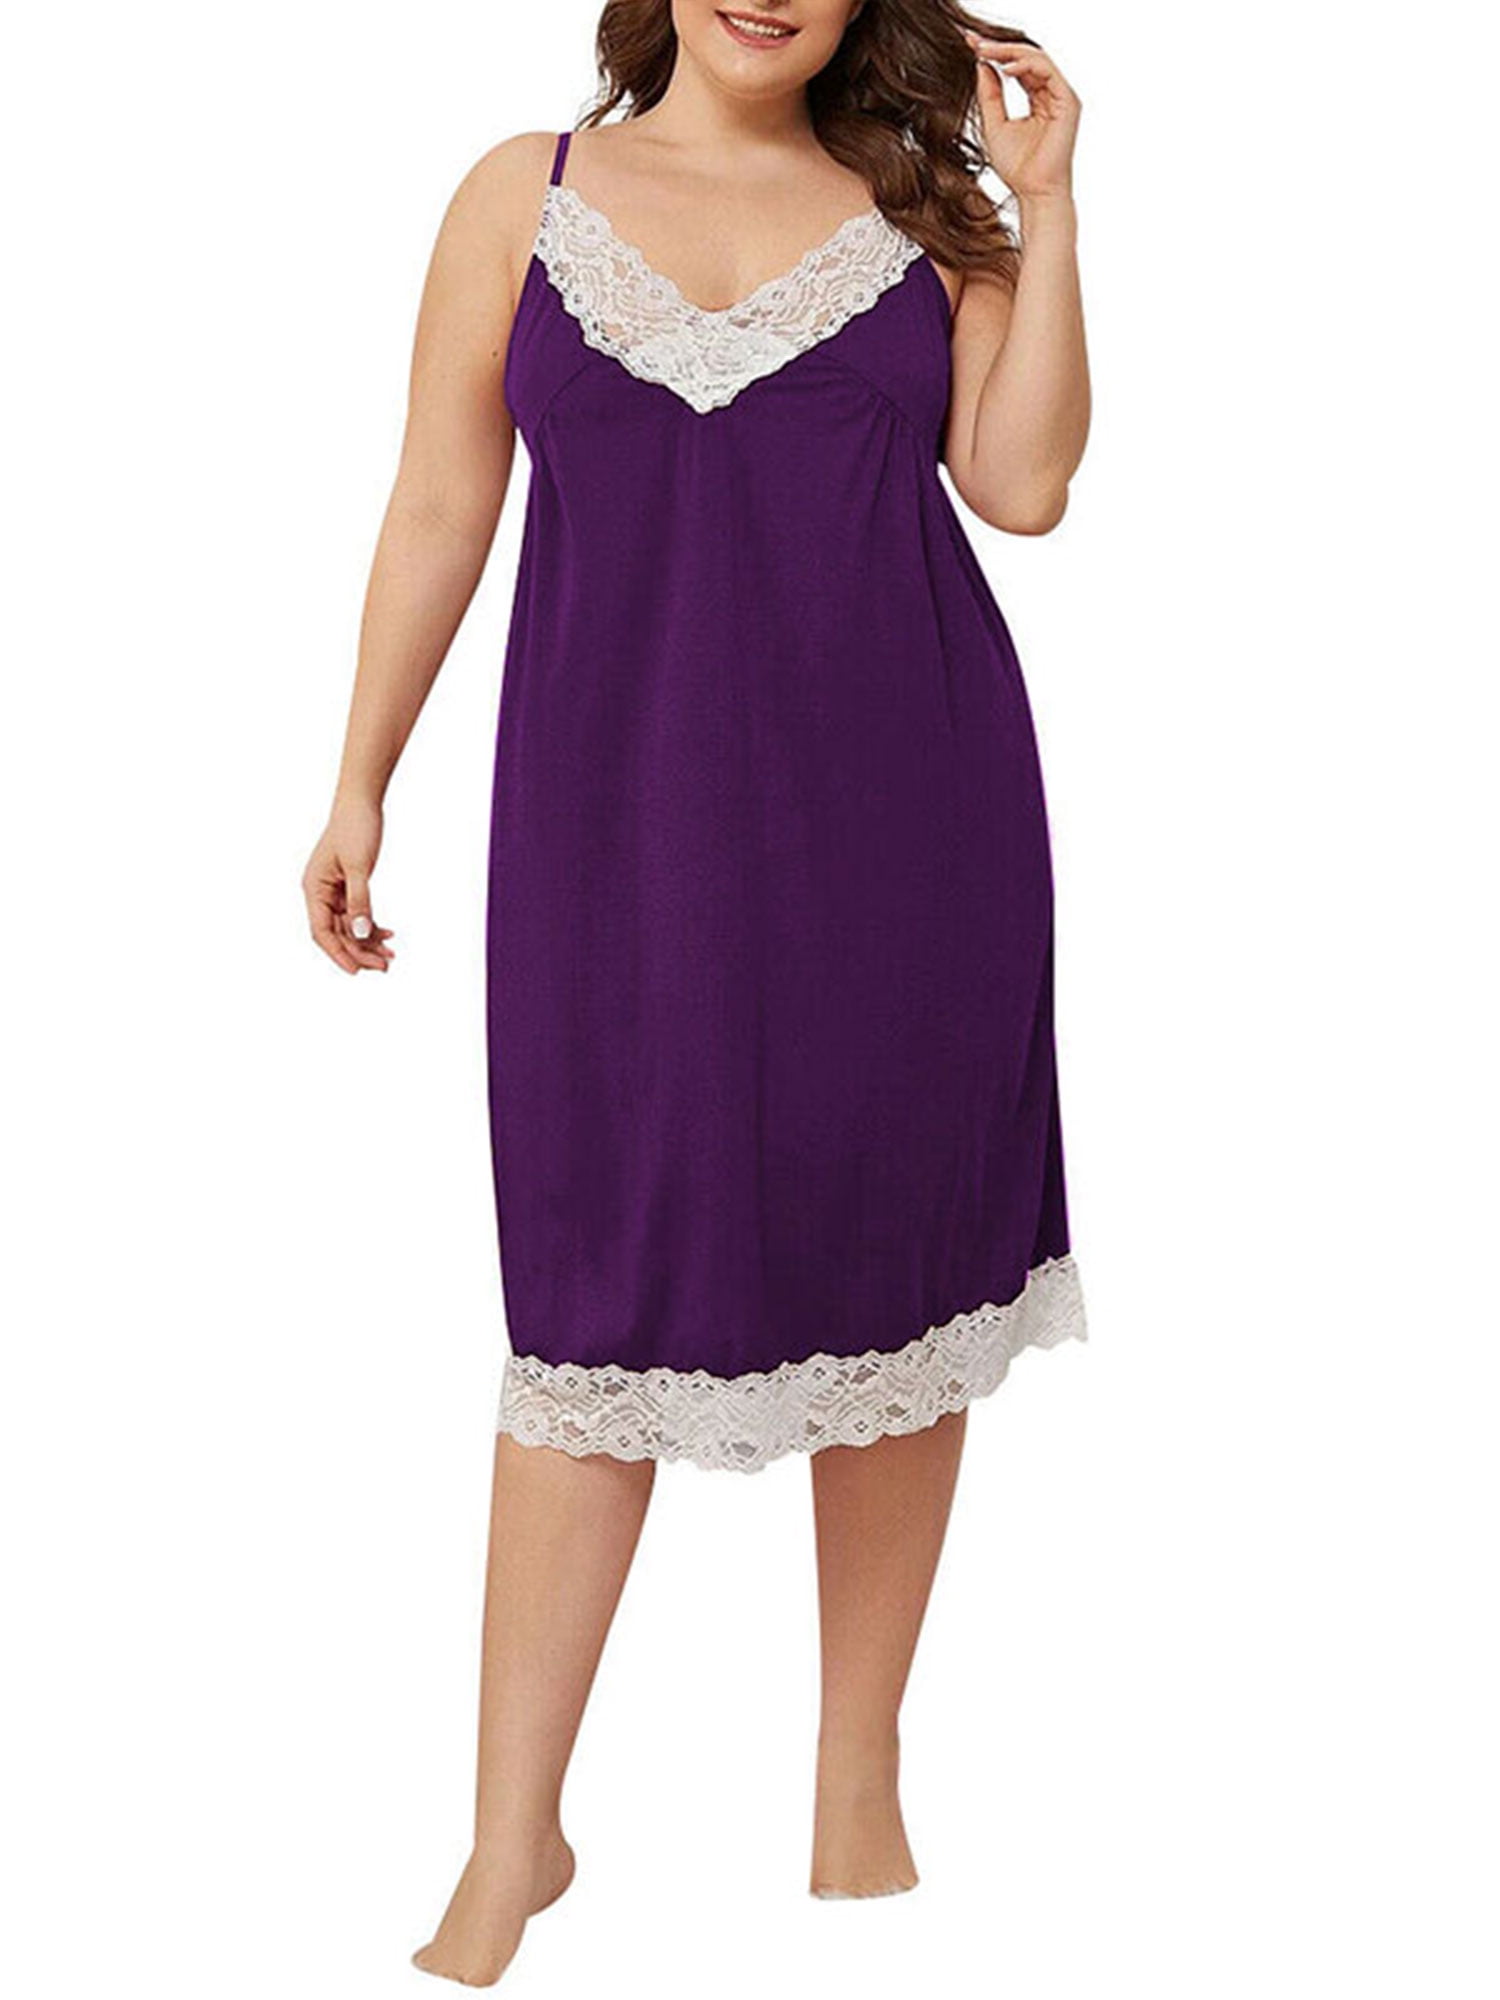 Plus Size Sleepwear Loose Oversized Women Lace Trim Sleepwear Dress Lounge Wear Nightdress Home Dress - Walmart.com